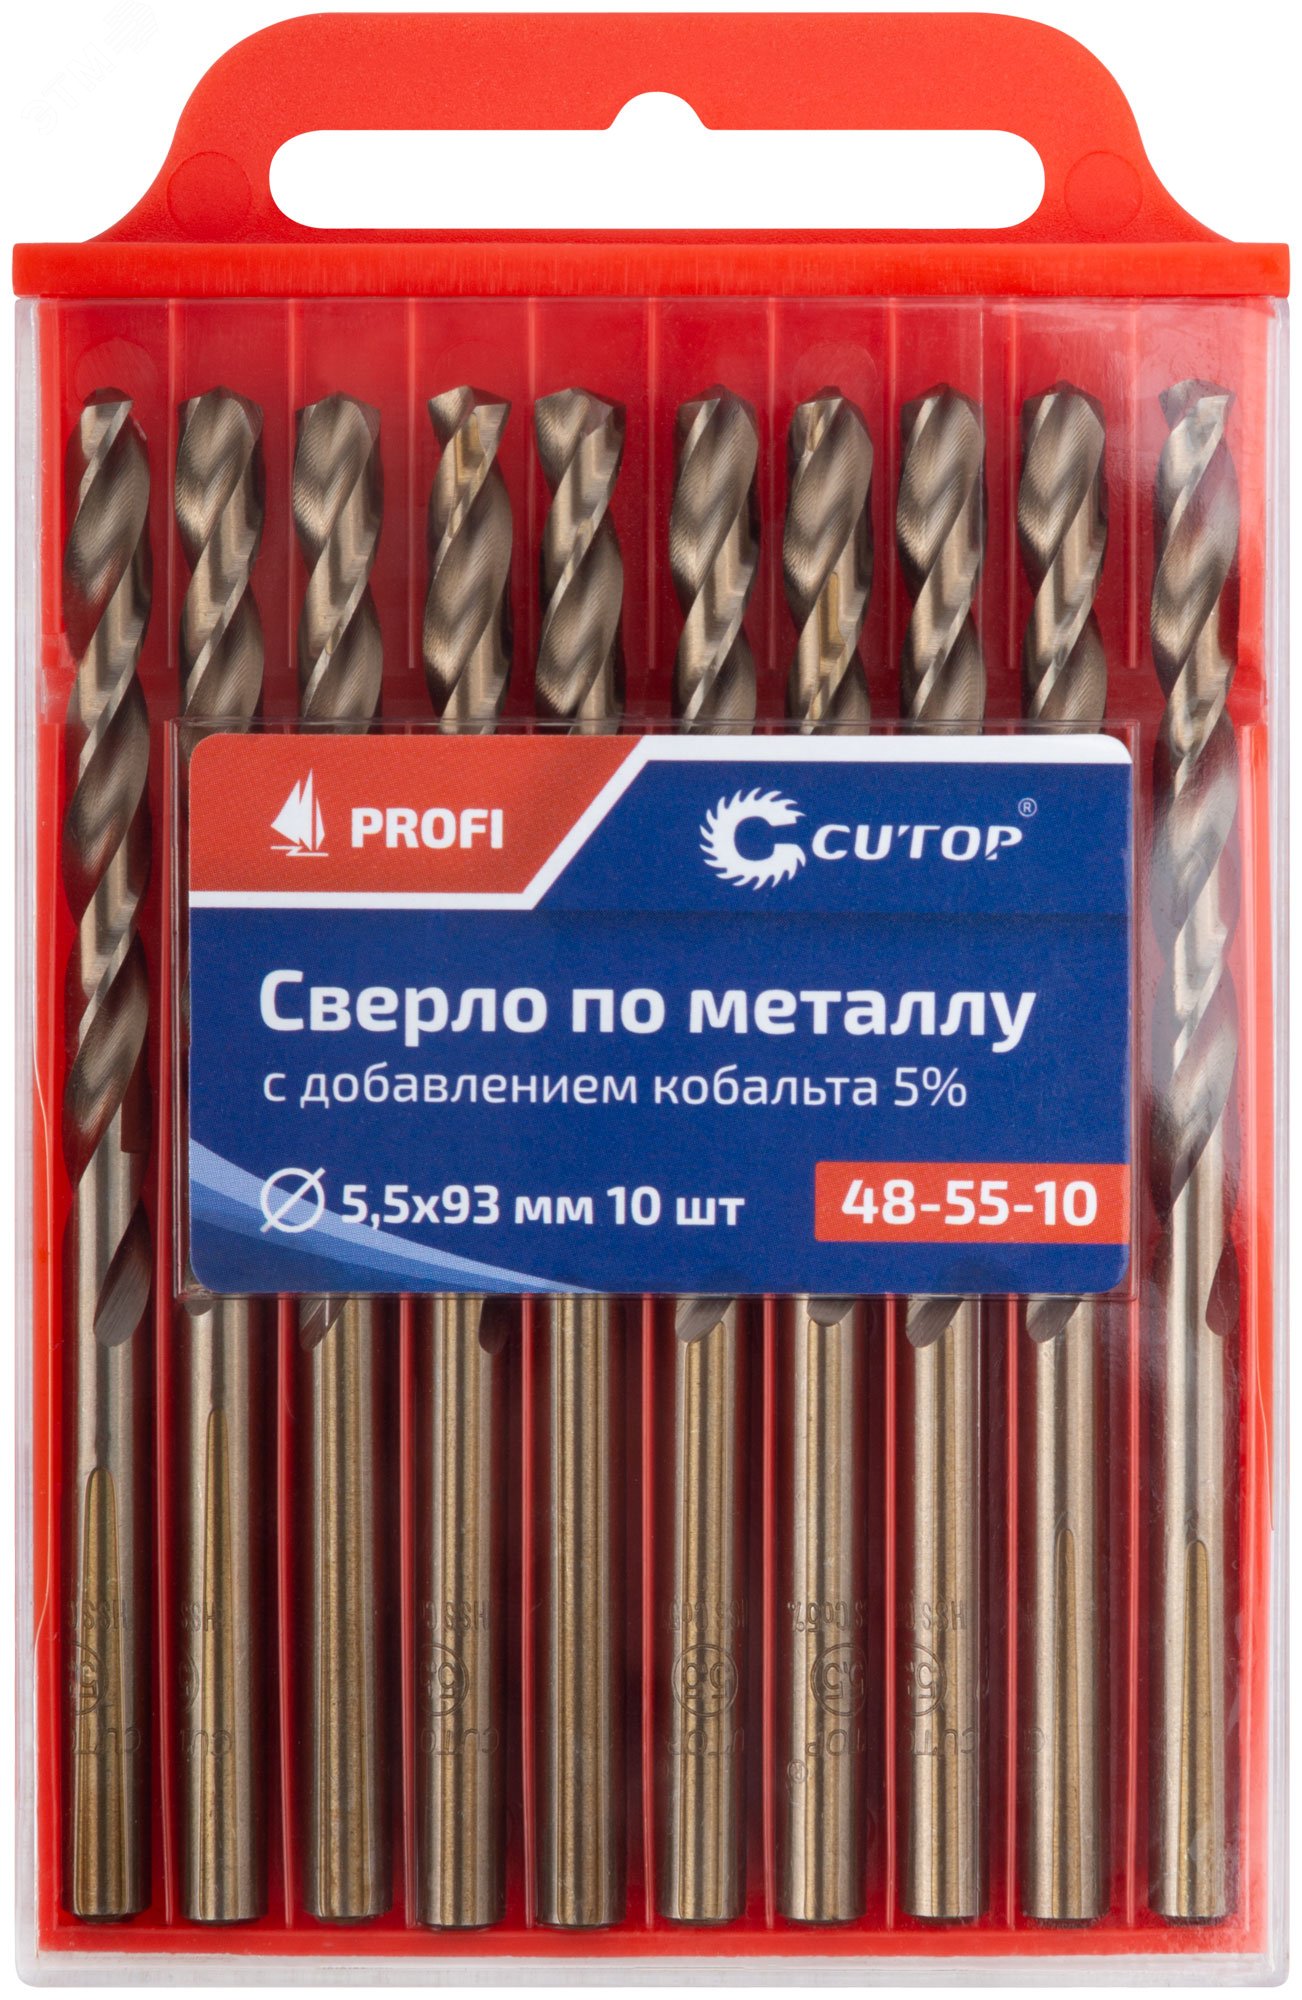 Сверло по металлу Cutop Profi с кобальтом 5%, 5.5 x 93 мм (10шт) 48-55-10 CUTOP - превью 3